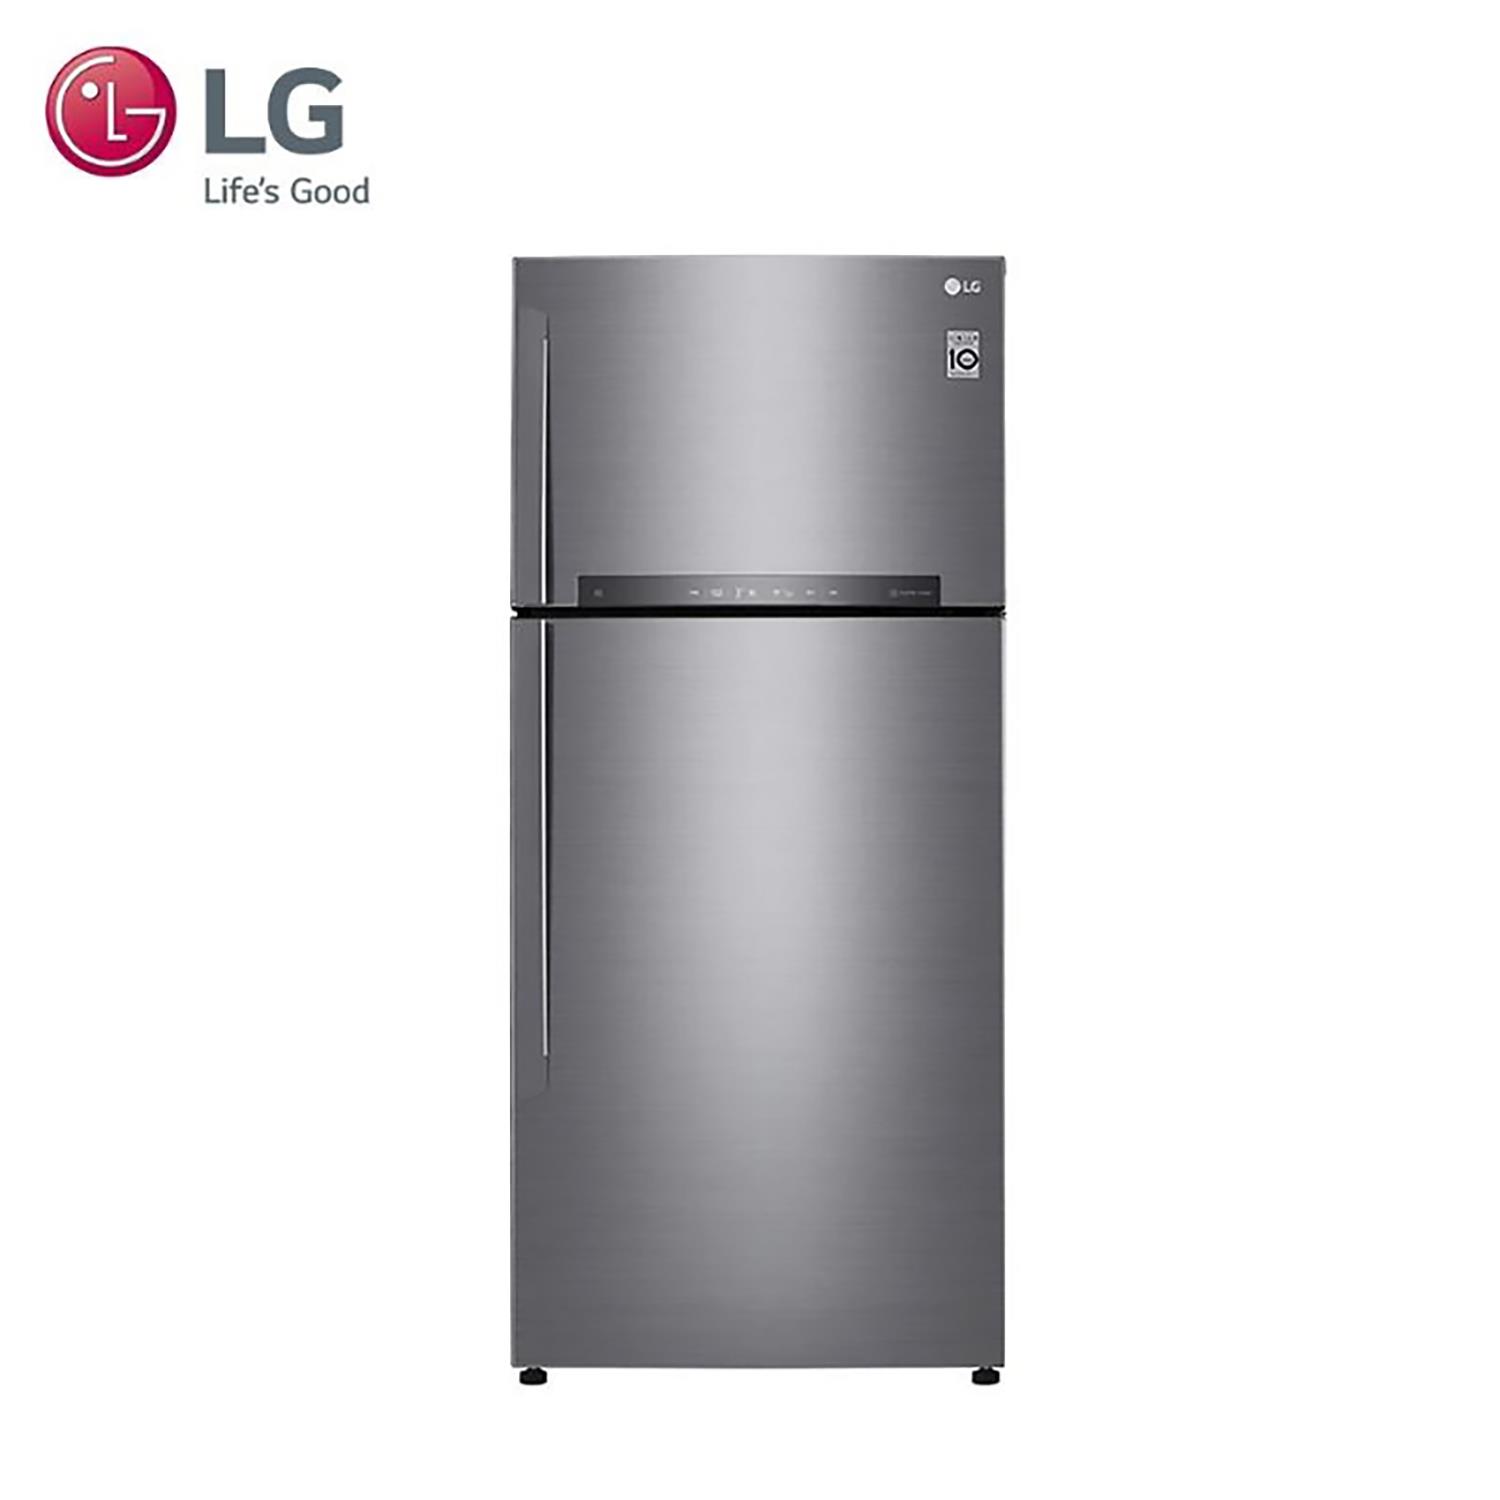 【LG】樂金525公升雙門連網冰箱(GN-HL567SV)